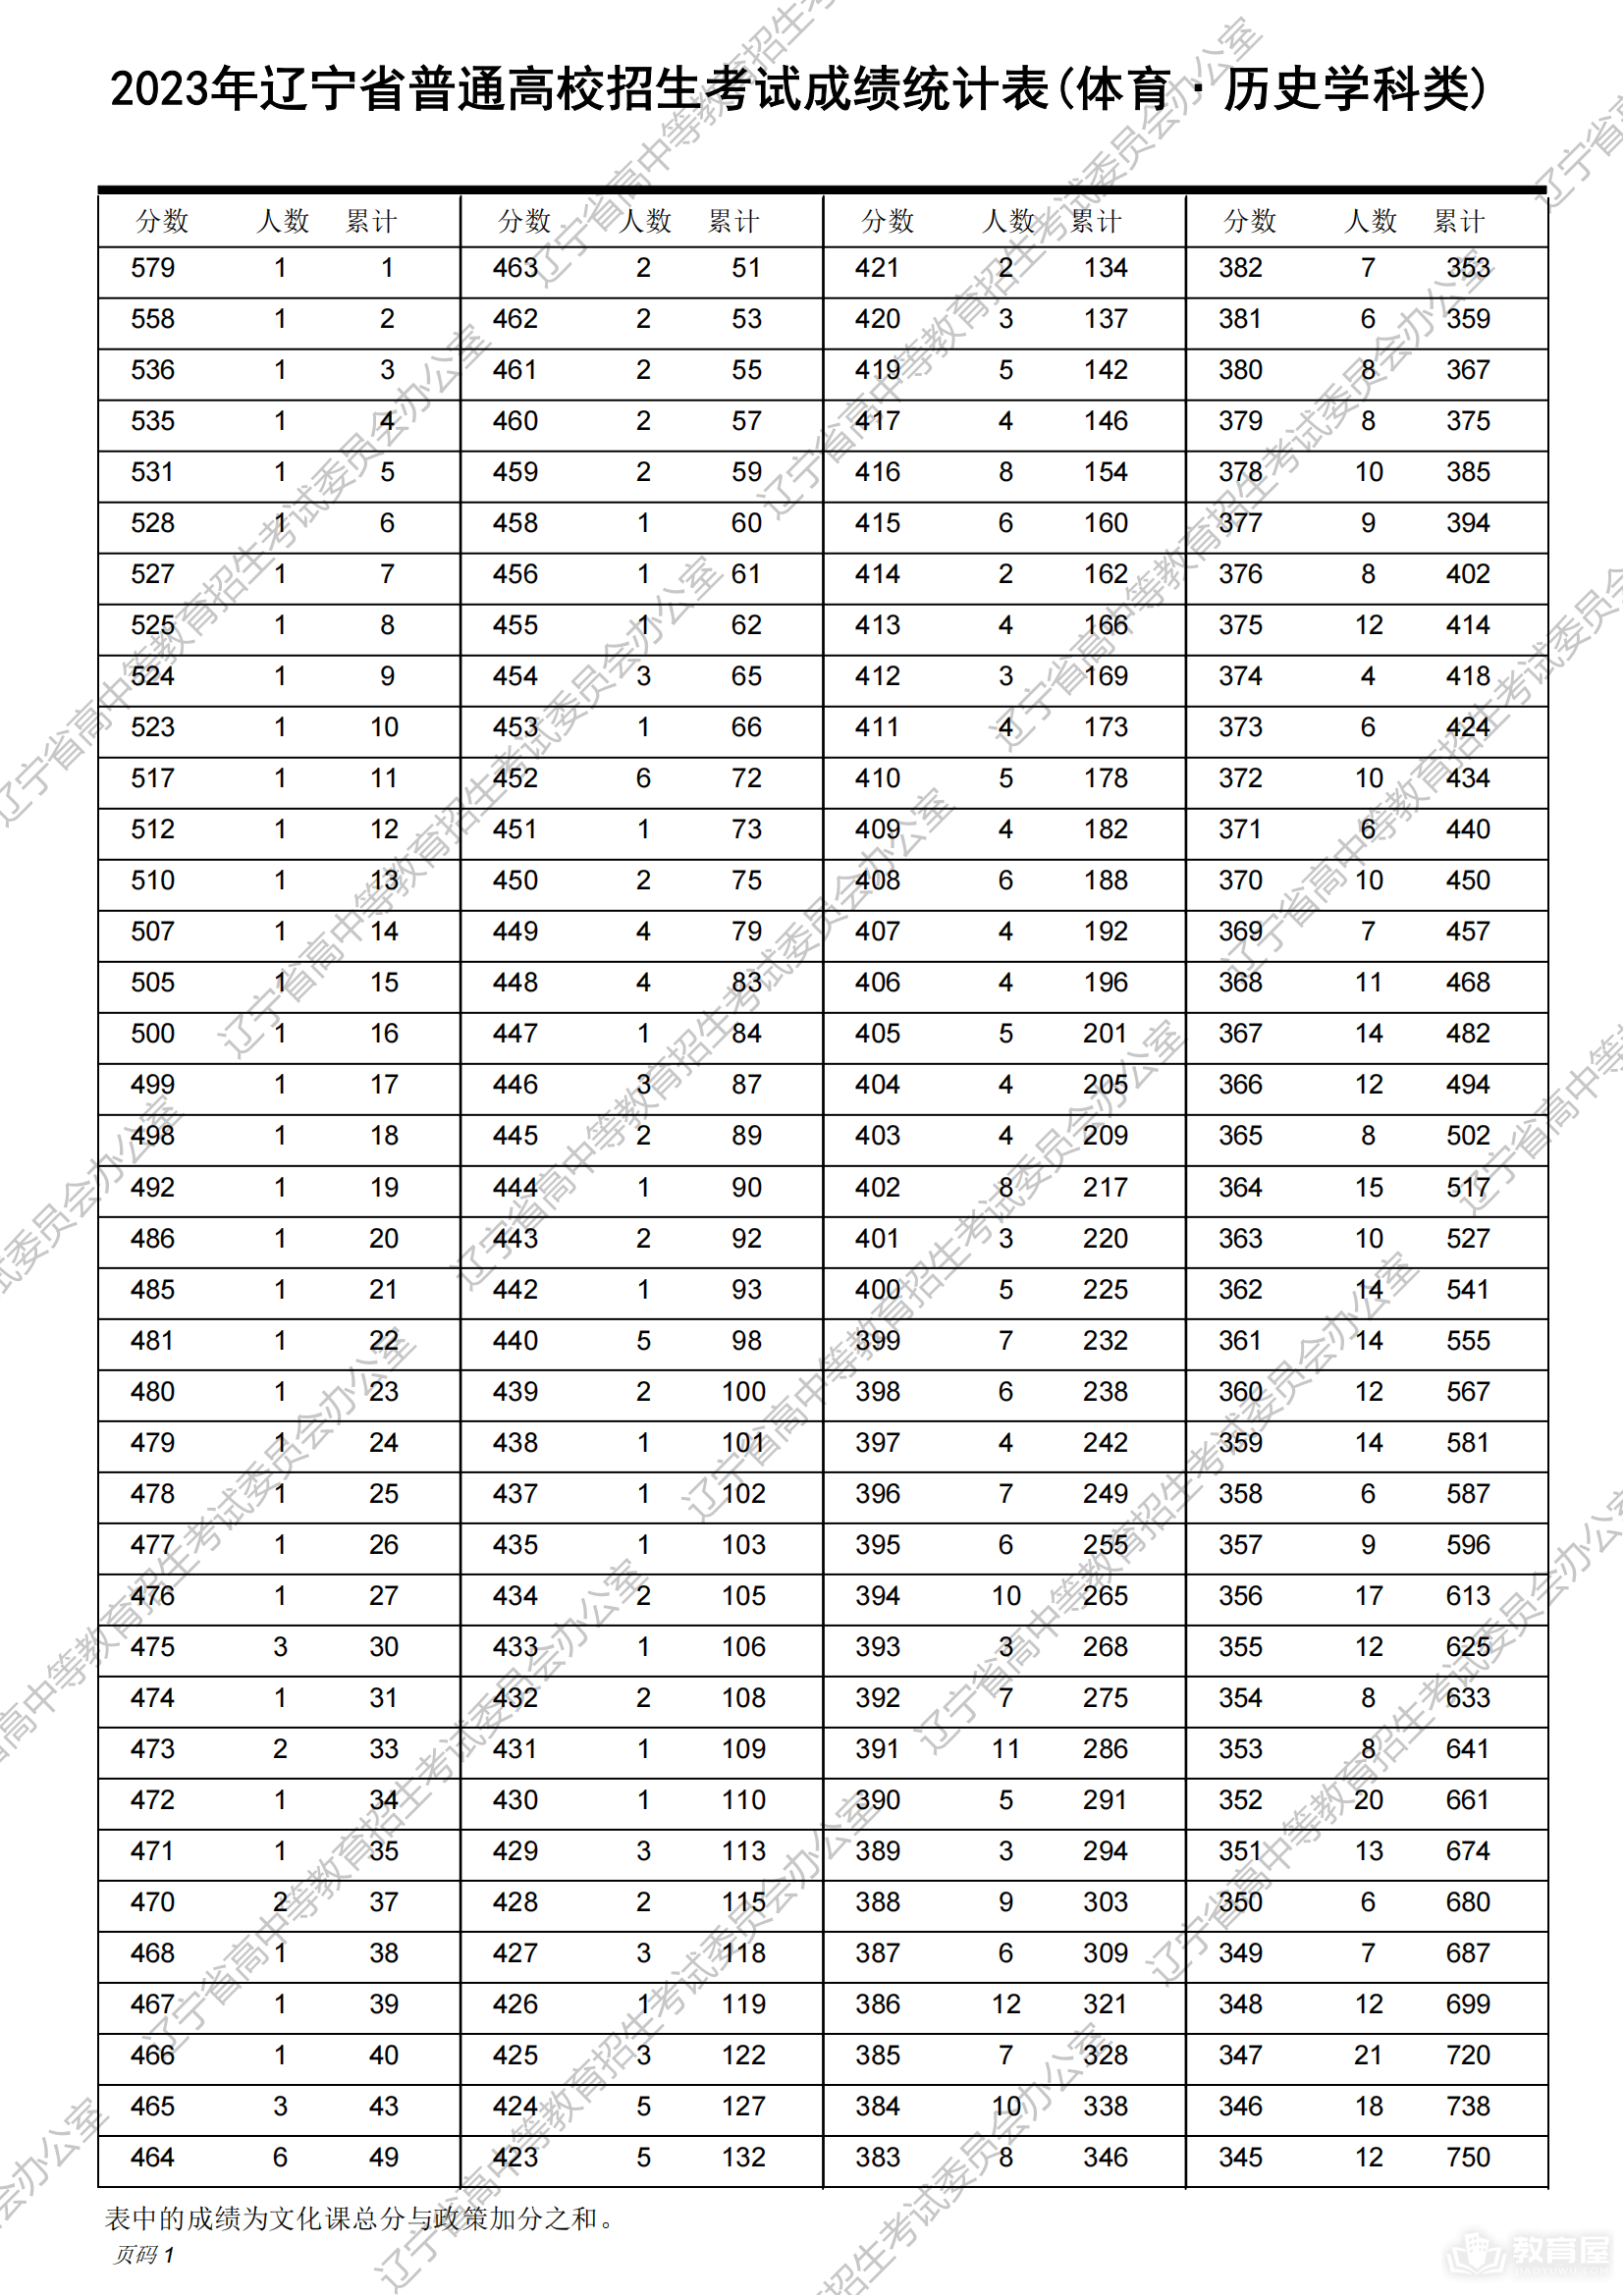 辽宁省普通高校招生考试成绩统计表（2023）